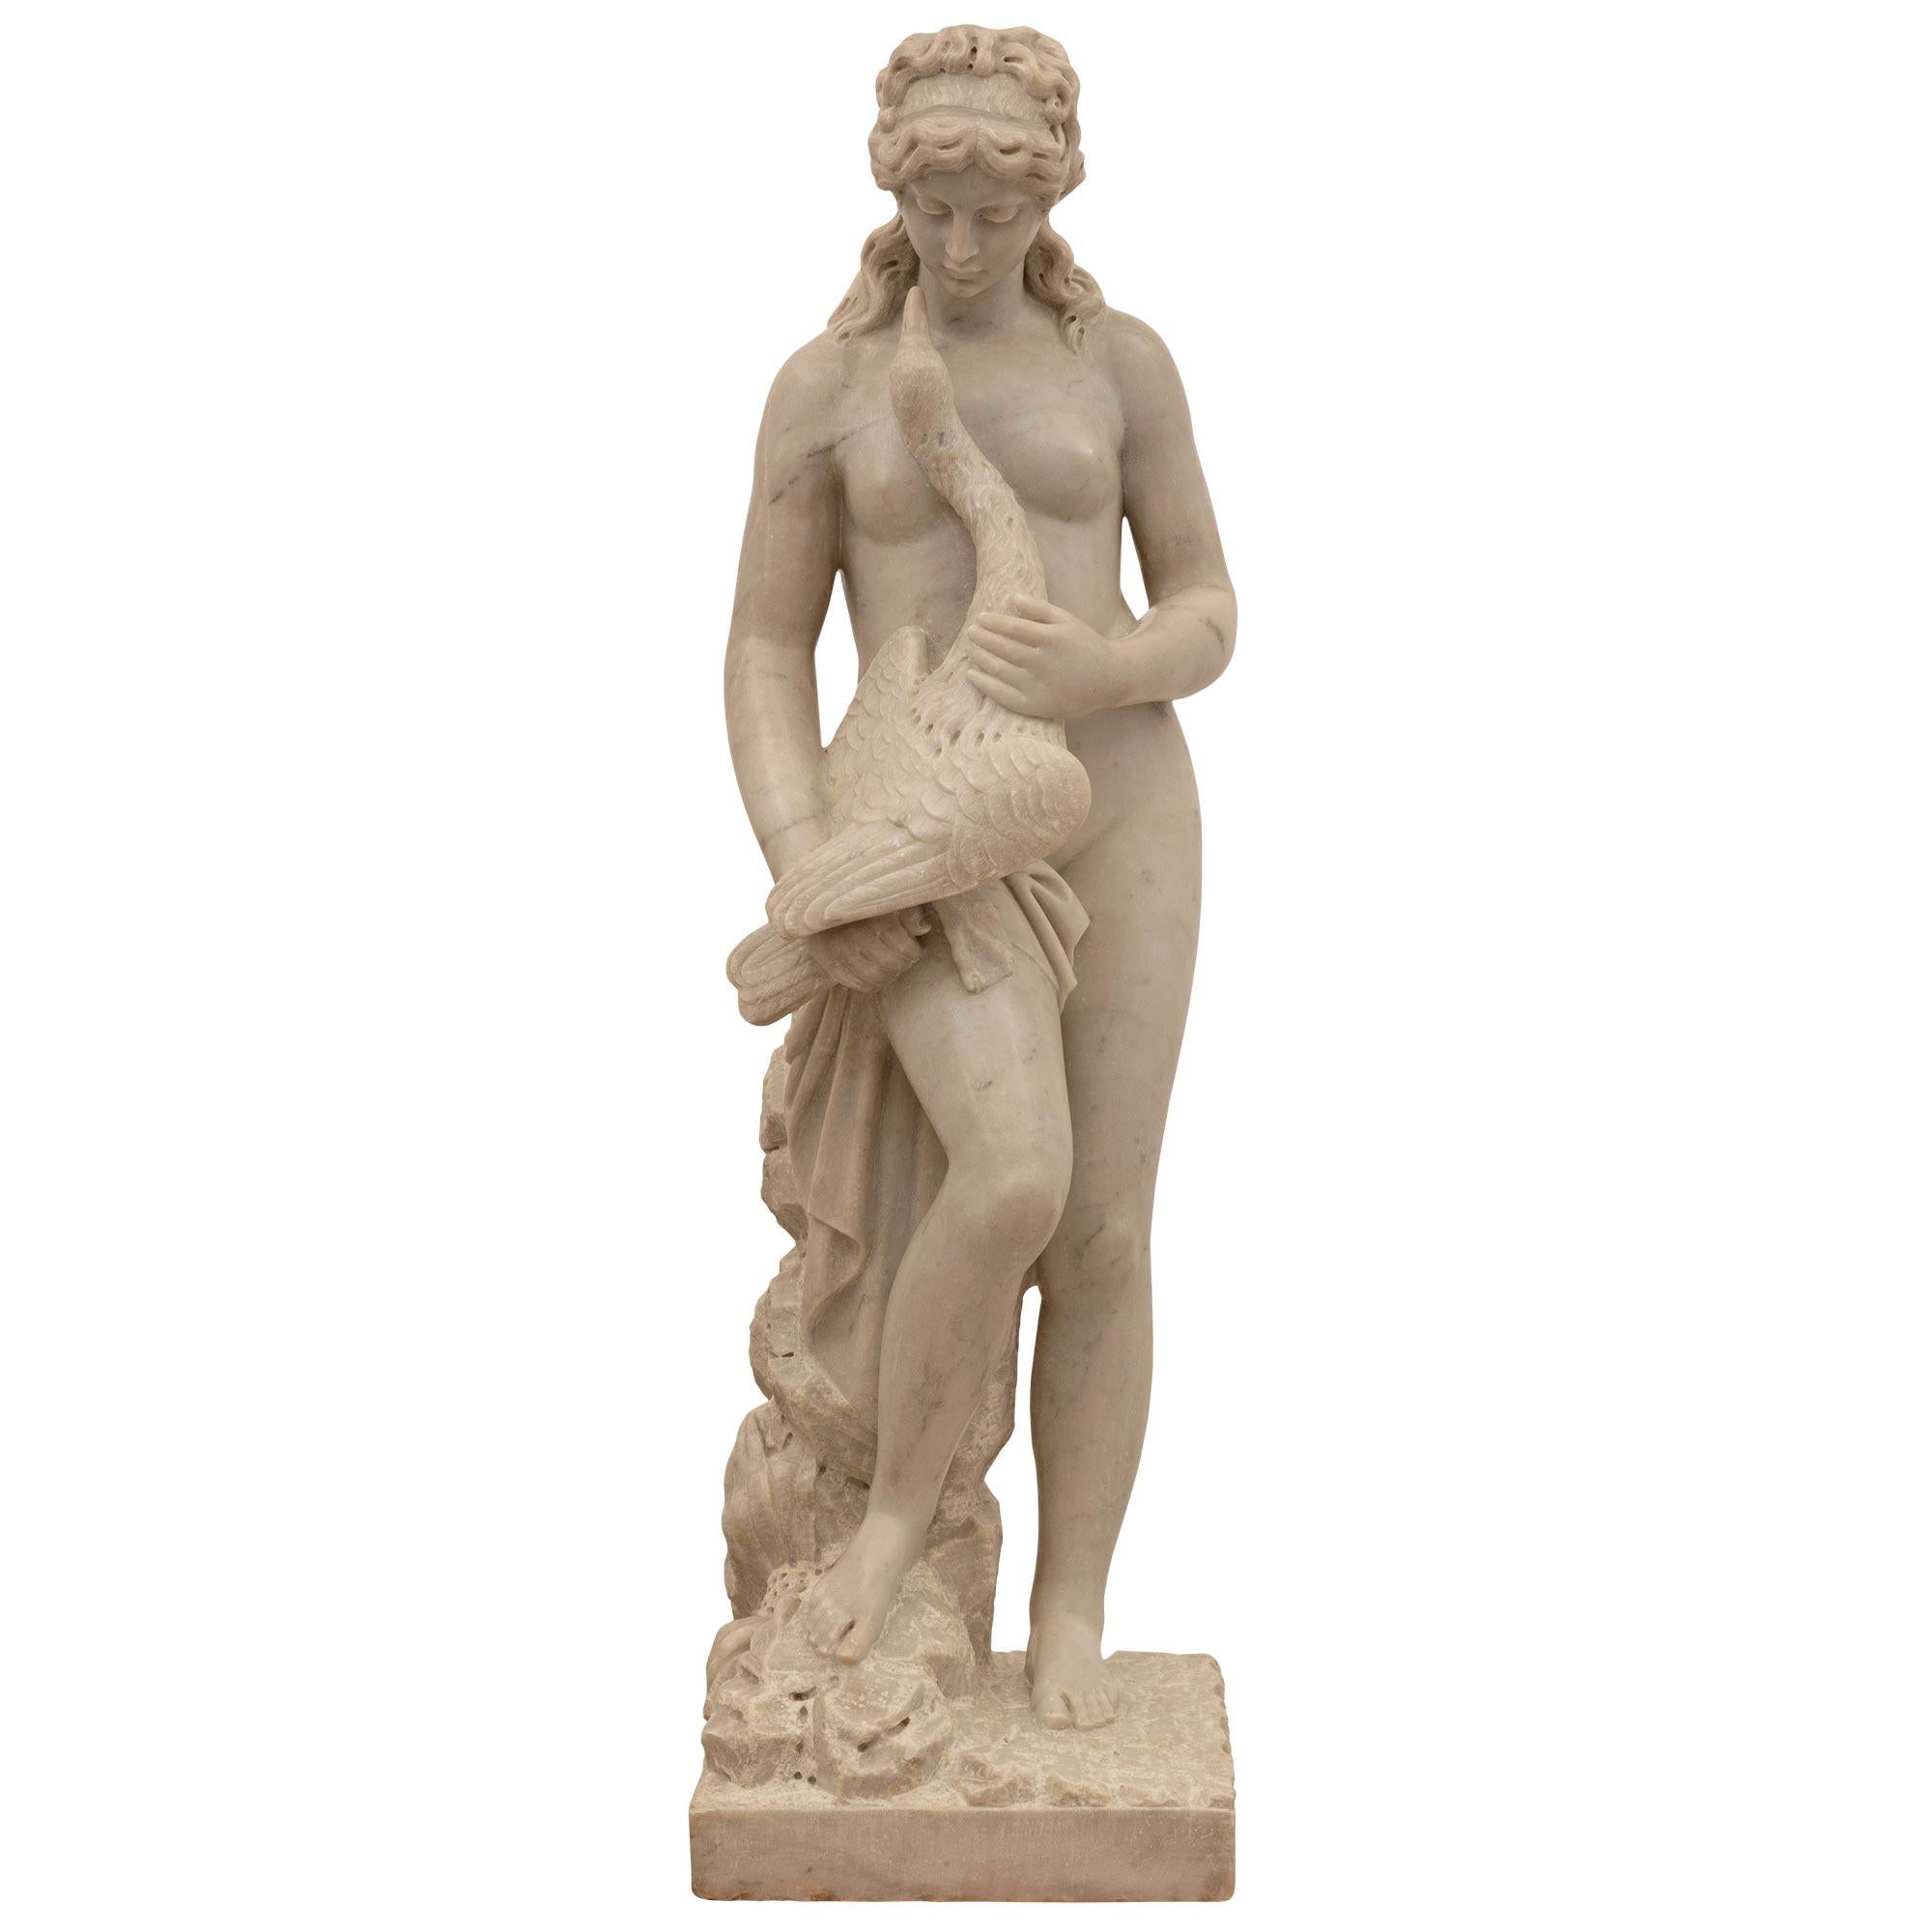 Eine schöne und äußerst hochwertige Statue aus weißem Carrara-Marmor aus dem 19. Jahrhundert, die Leda und den Schwan darstellt. Die Statue steht auf einem quadratischen Sockel mit einem herrlichen, bodenähnlichen Design und einer äußerst